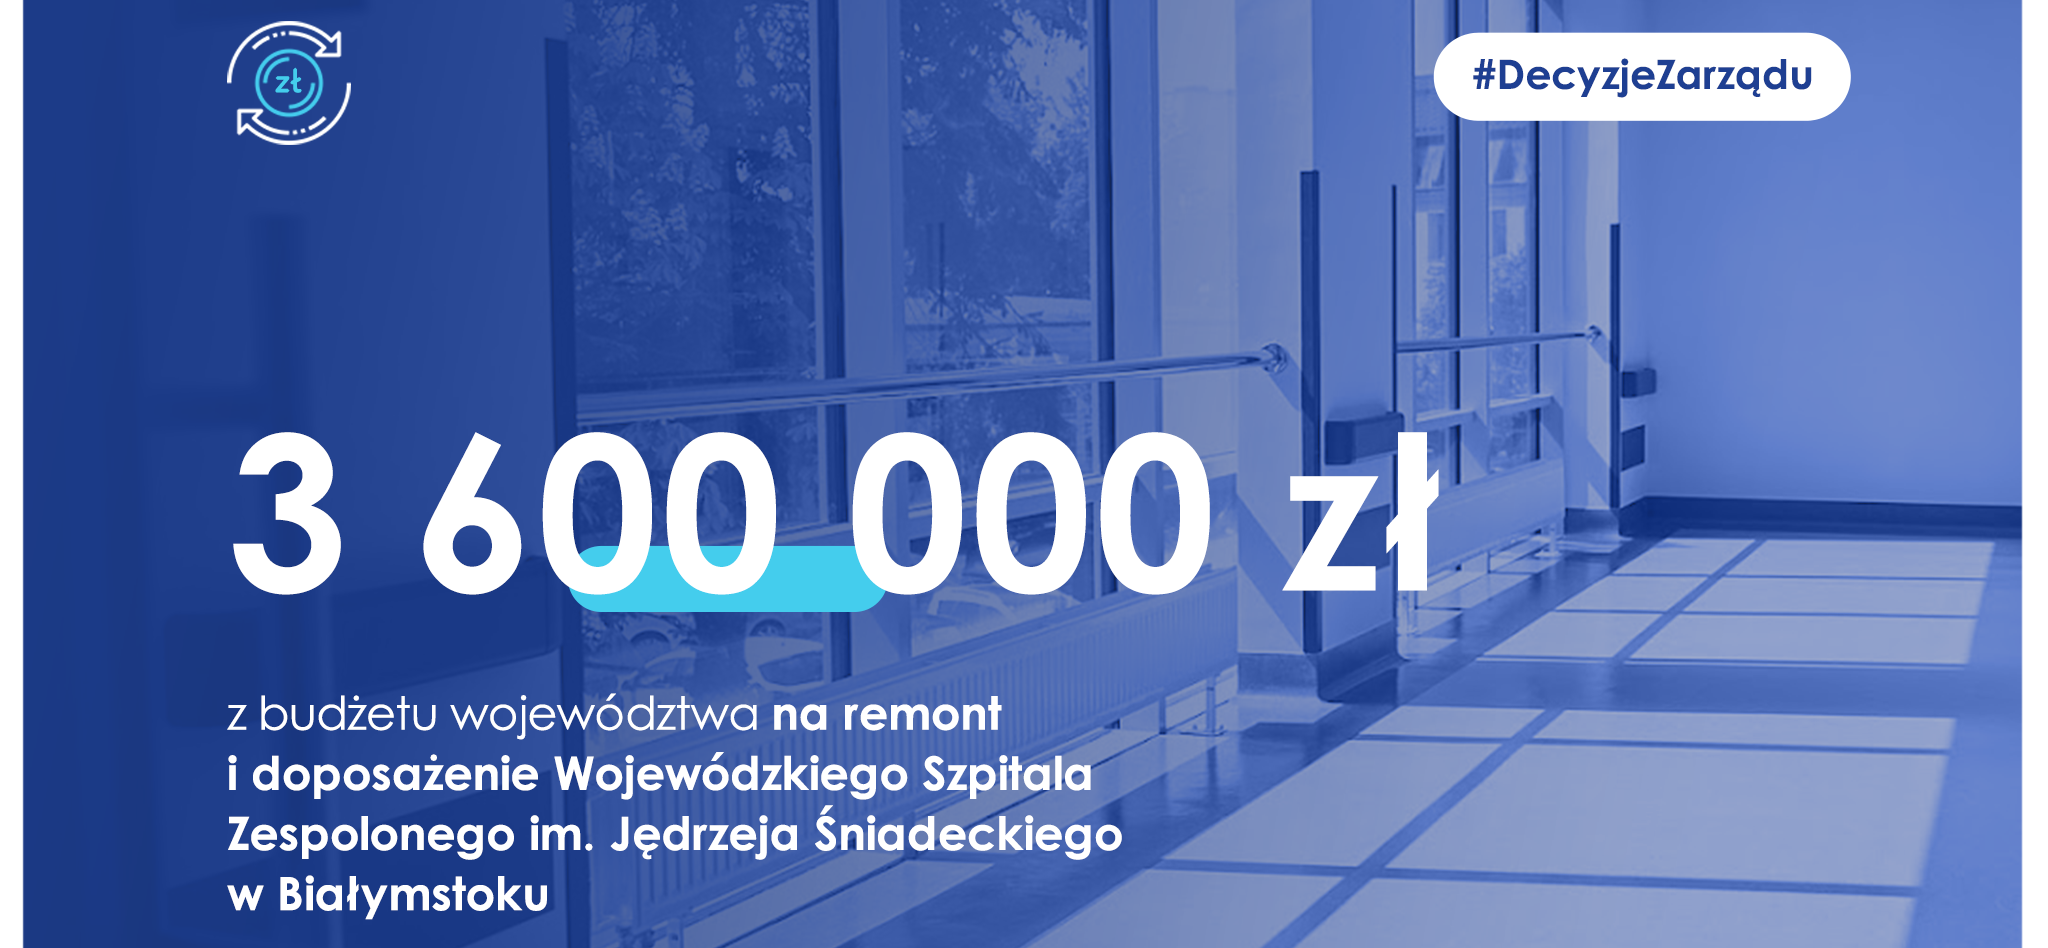 zdjęcie szpitala z napisem: 3,6 mln zł dla szpitala wojewódzkiego w Białymstoku